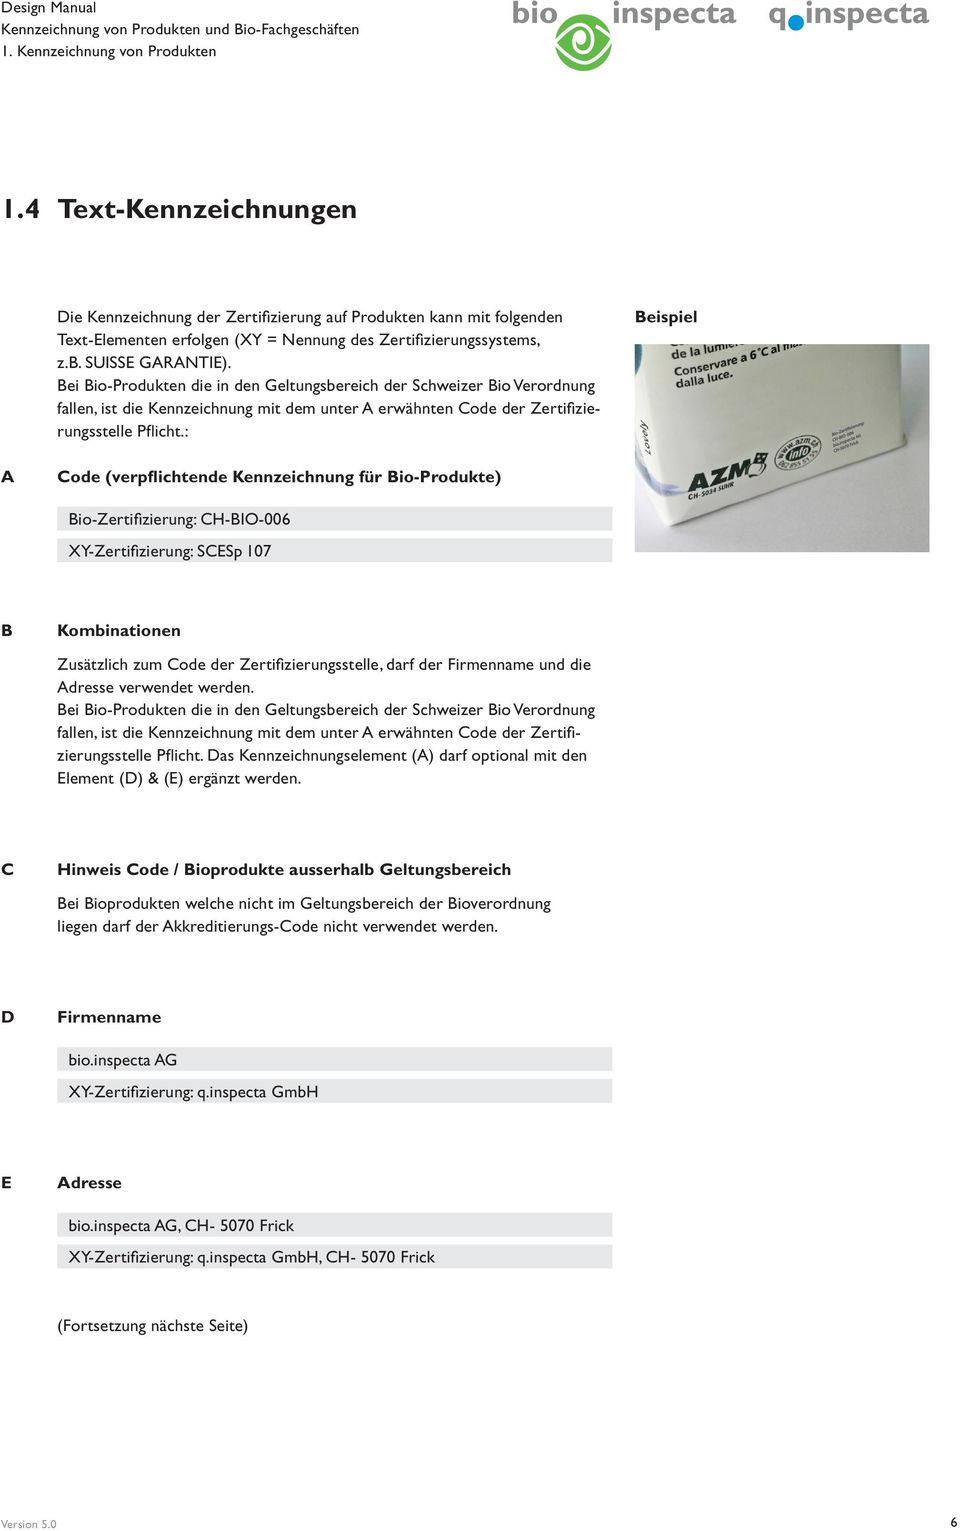 Bei Bio-Produkten die in den Geltungsbereich der Schweizer Bio Verordnung fallen, ist die Kennzeichnung mit dem unter A erwähnten Code der Zertifizierungsstelle Pflicht.